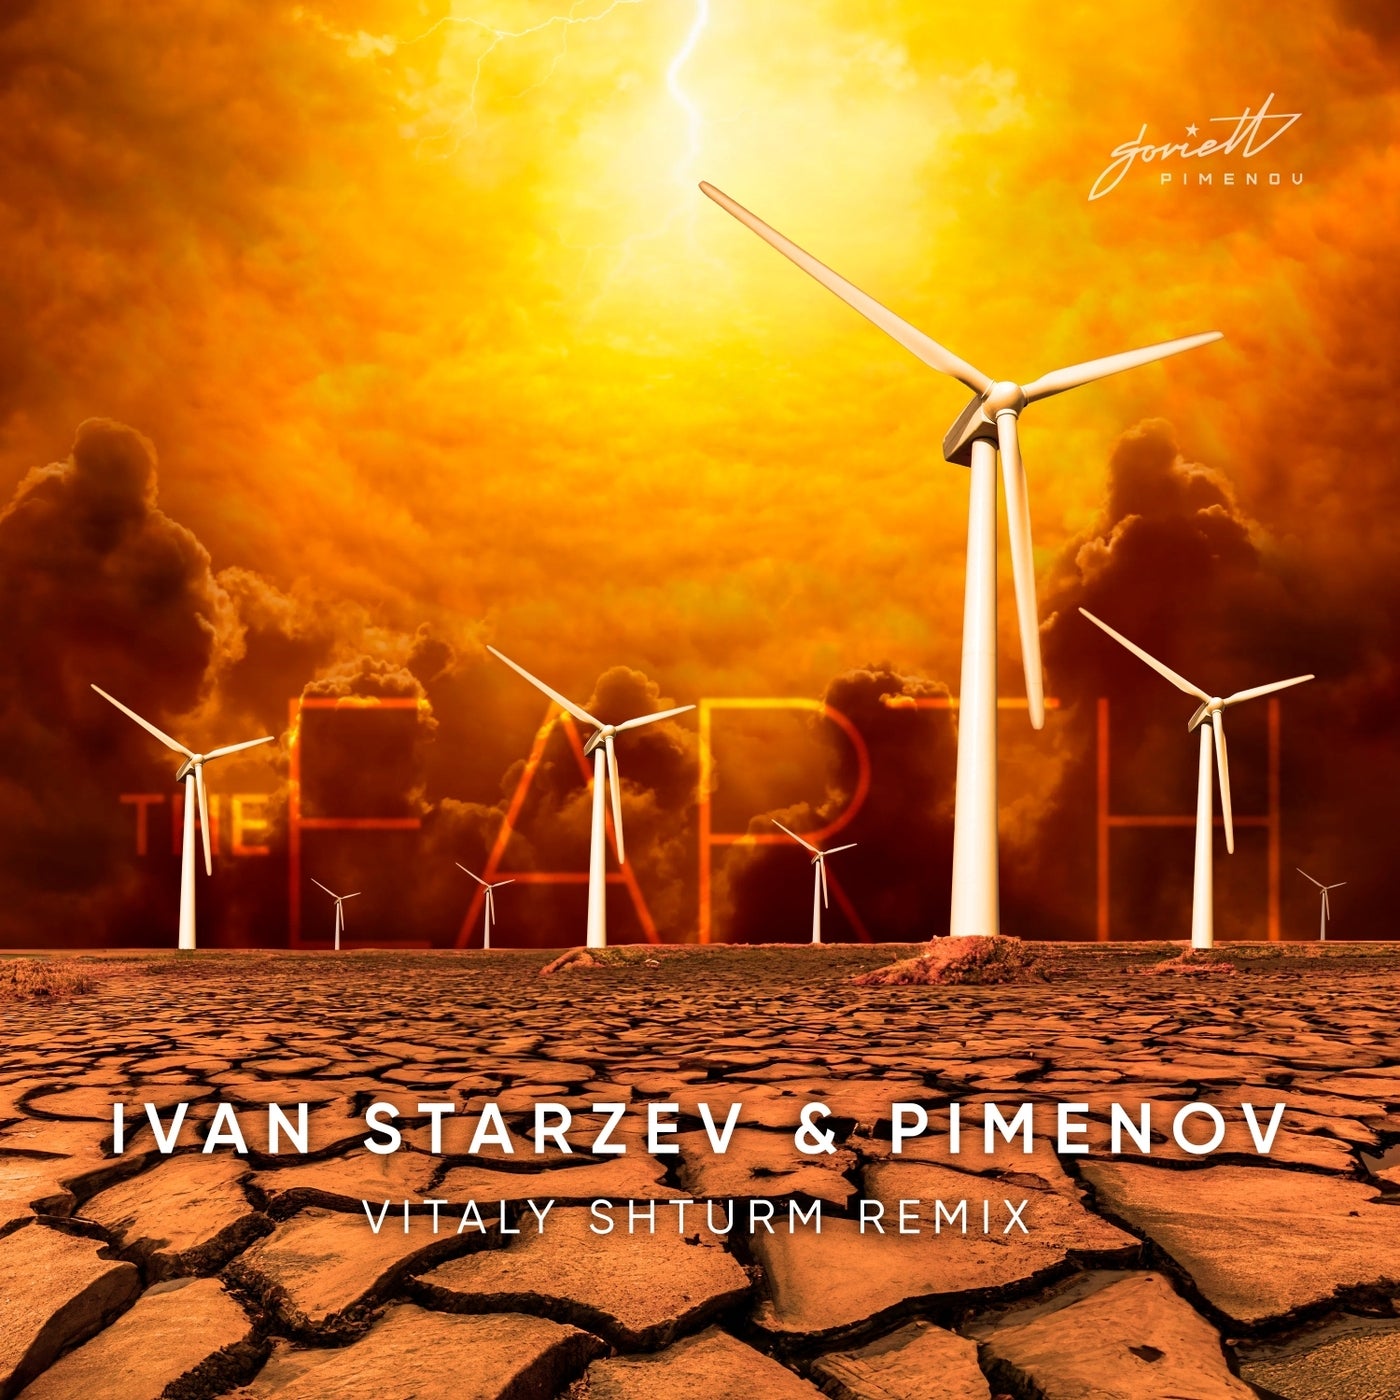 Cover - Pimenov, Ivan Starzev - Земля (Vitaly Shturm Remix)